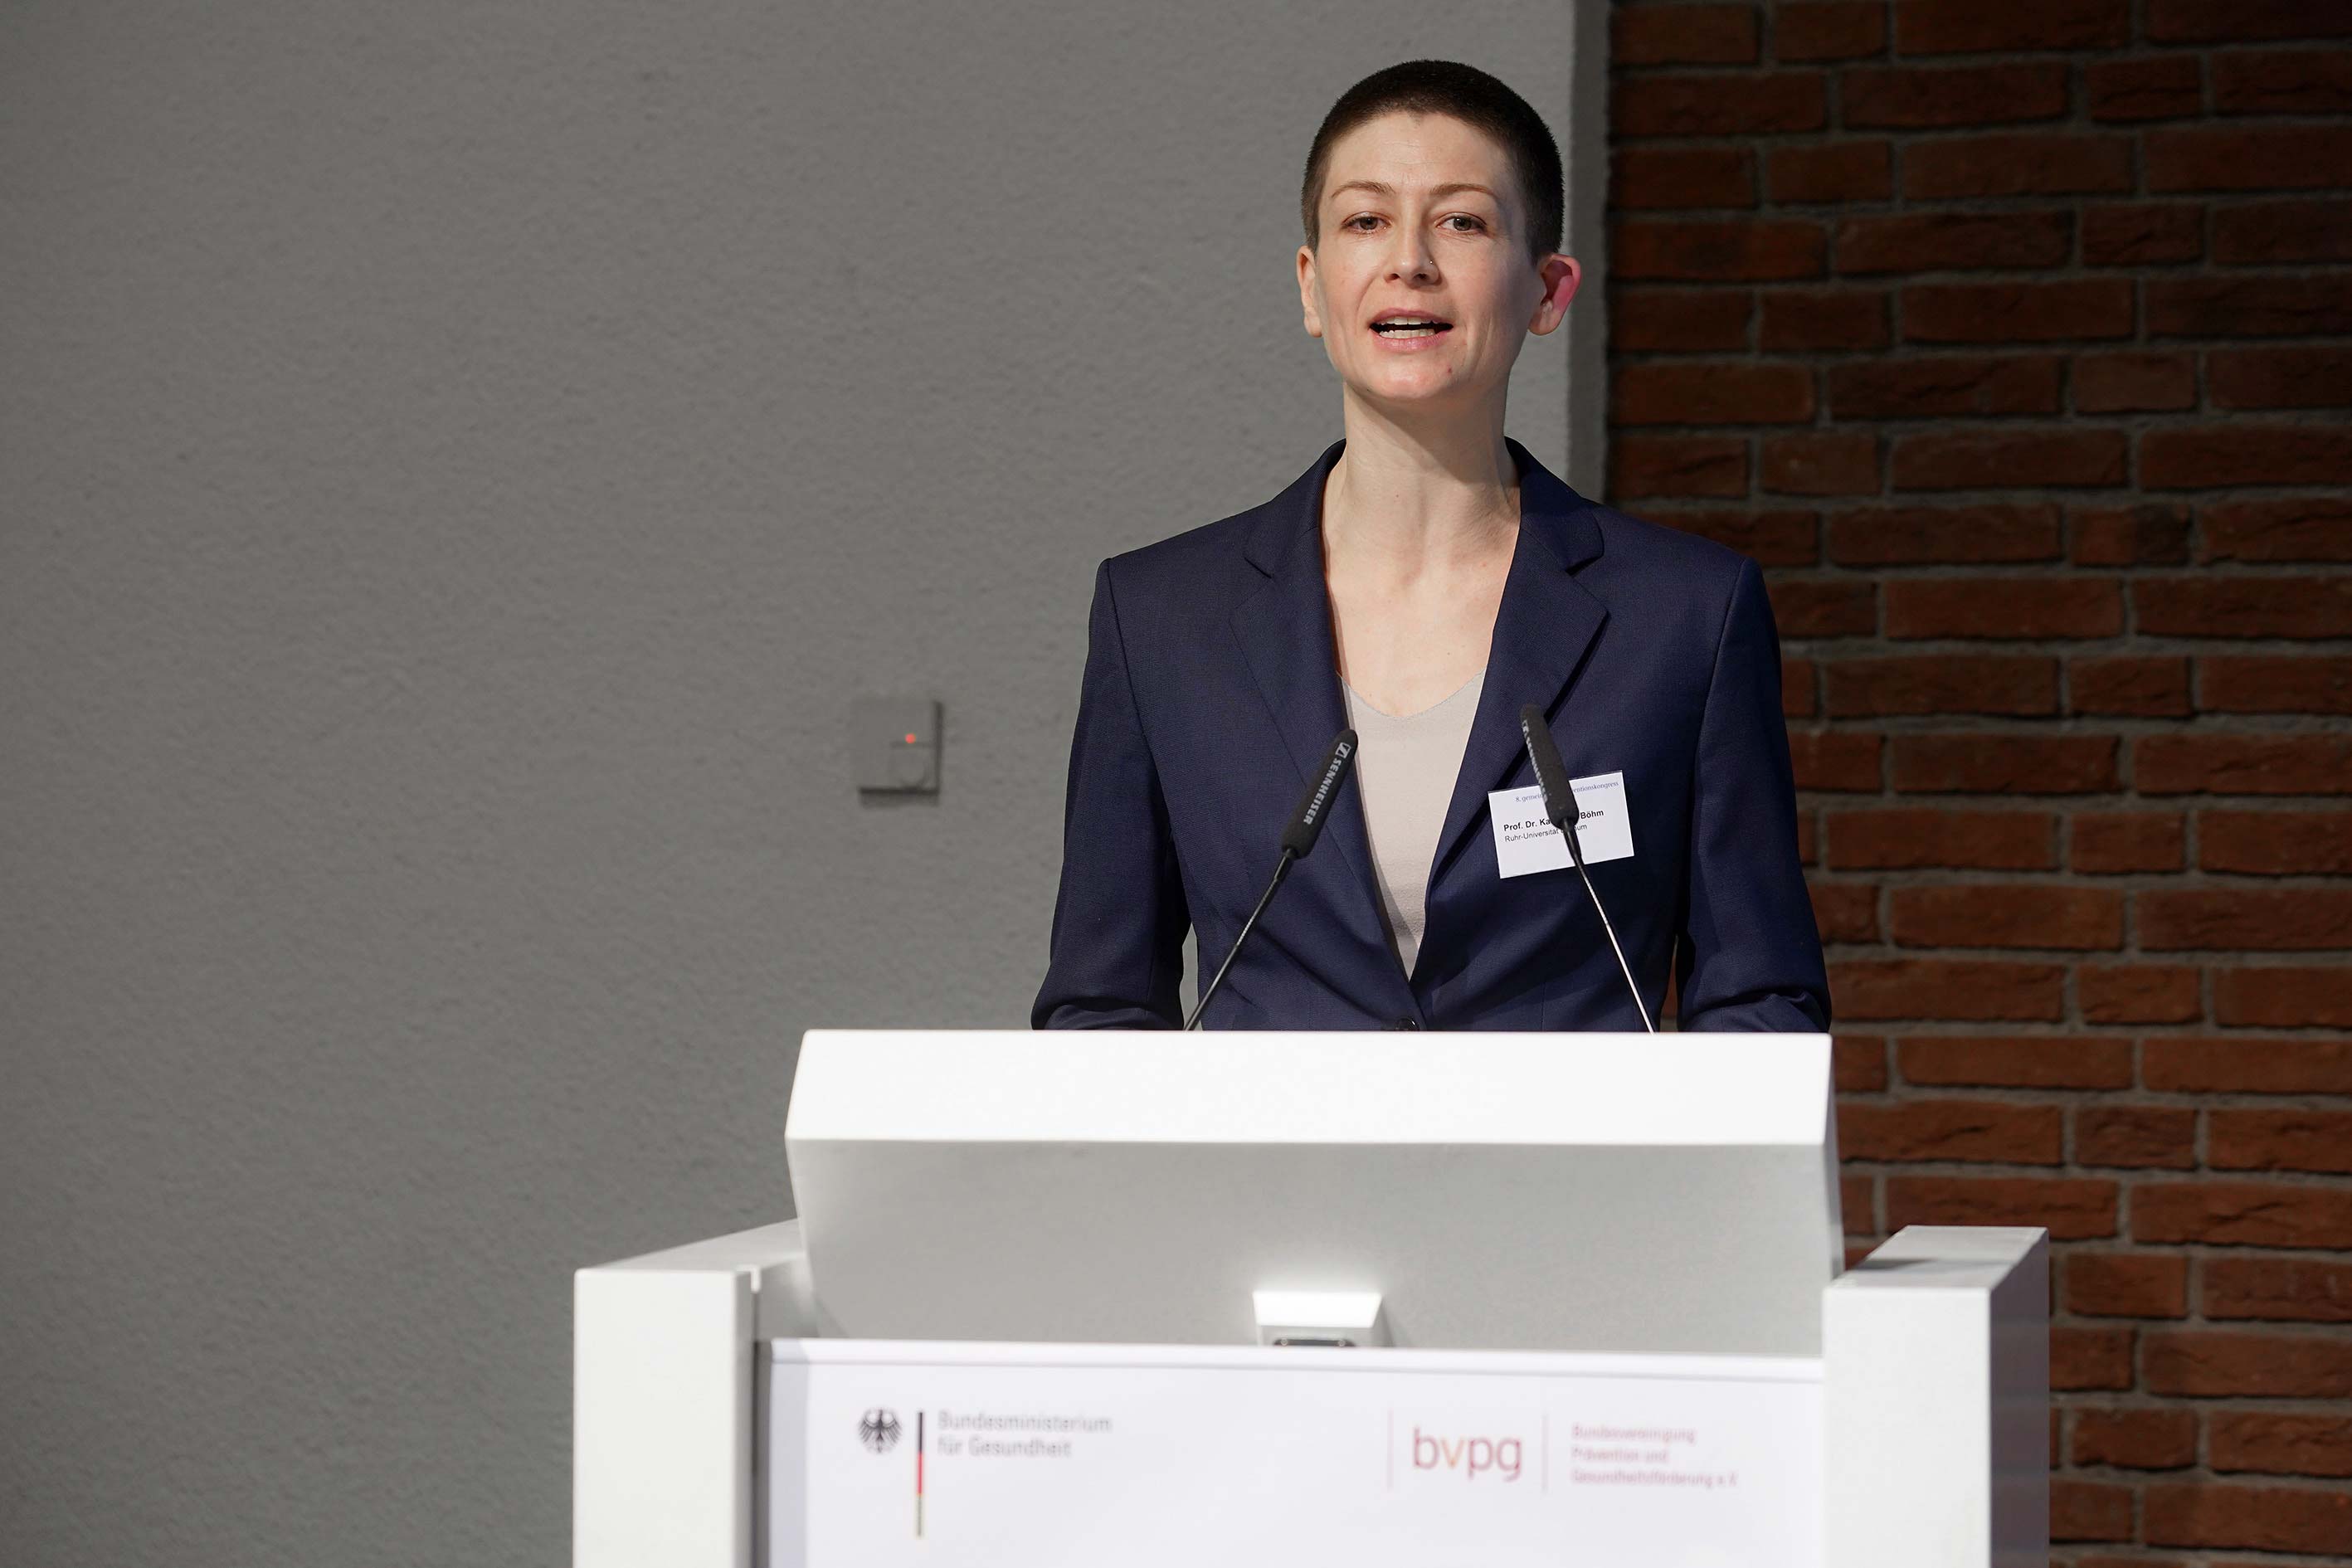 Prof. Dr. Katharina Böhm